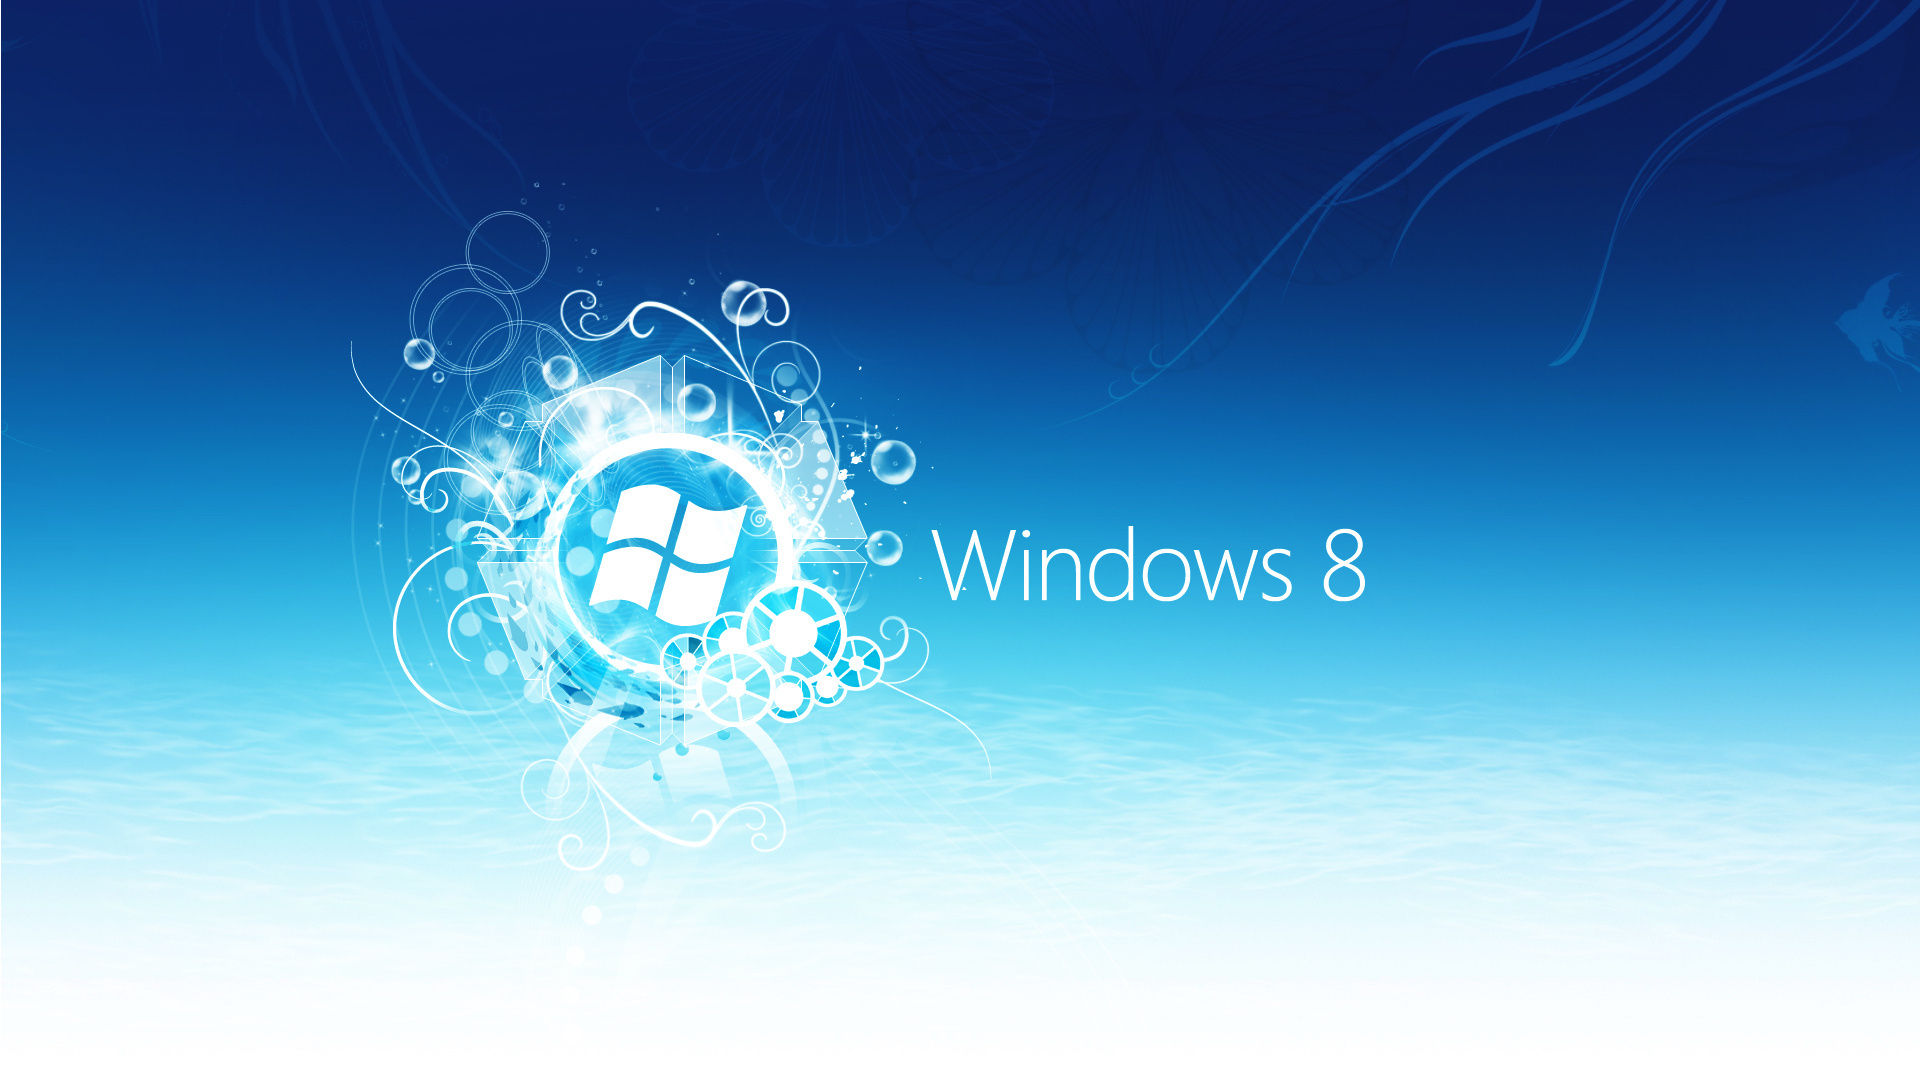 Windows 8 Wallpaper Hd 3d For Desktop Blue